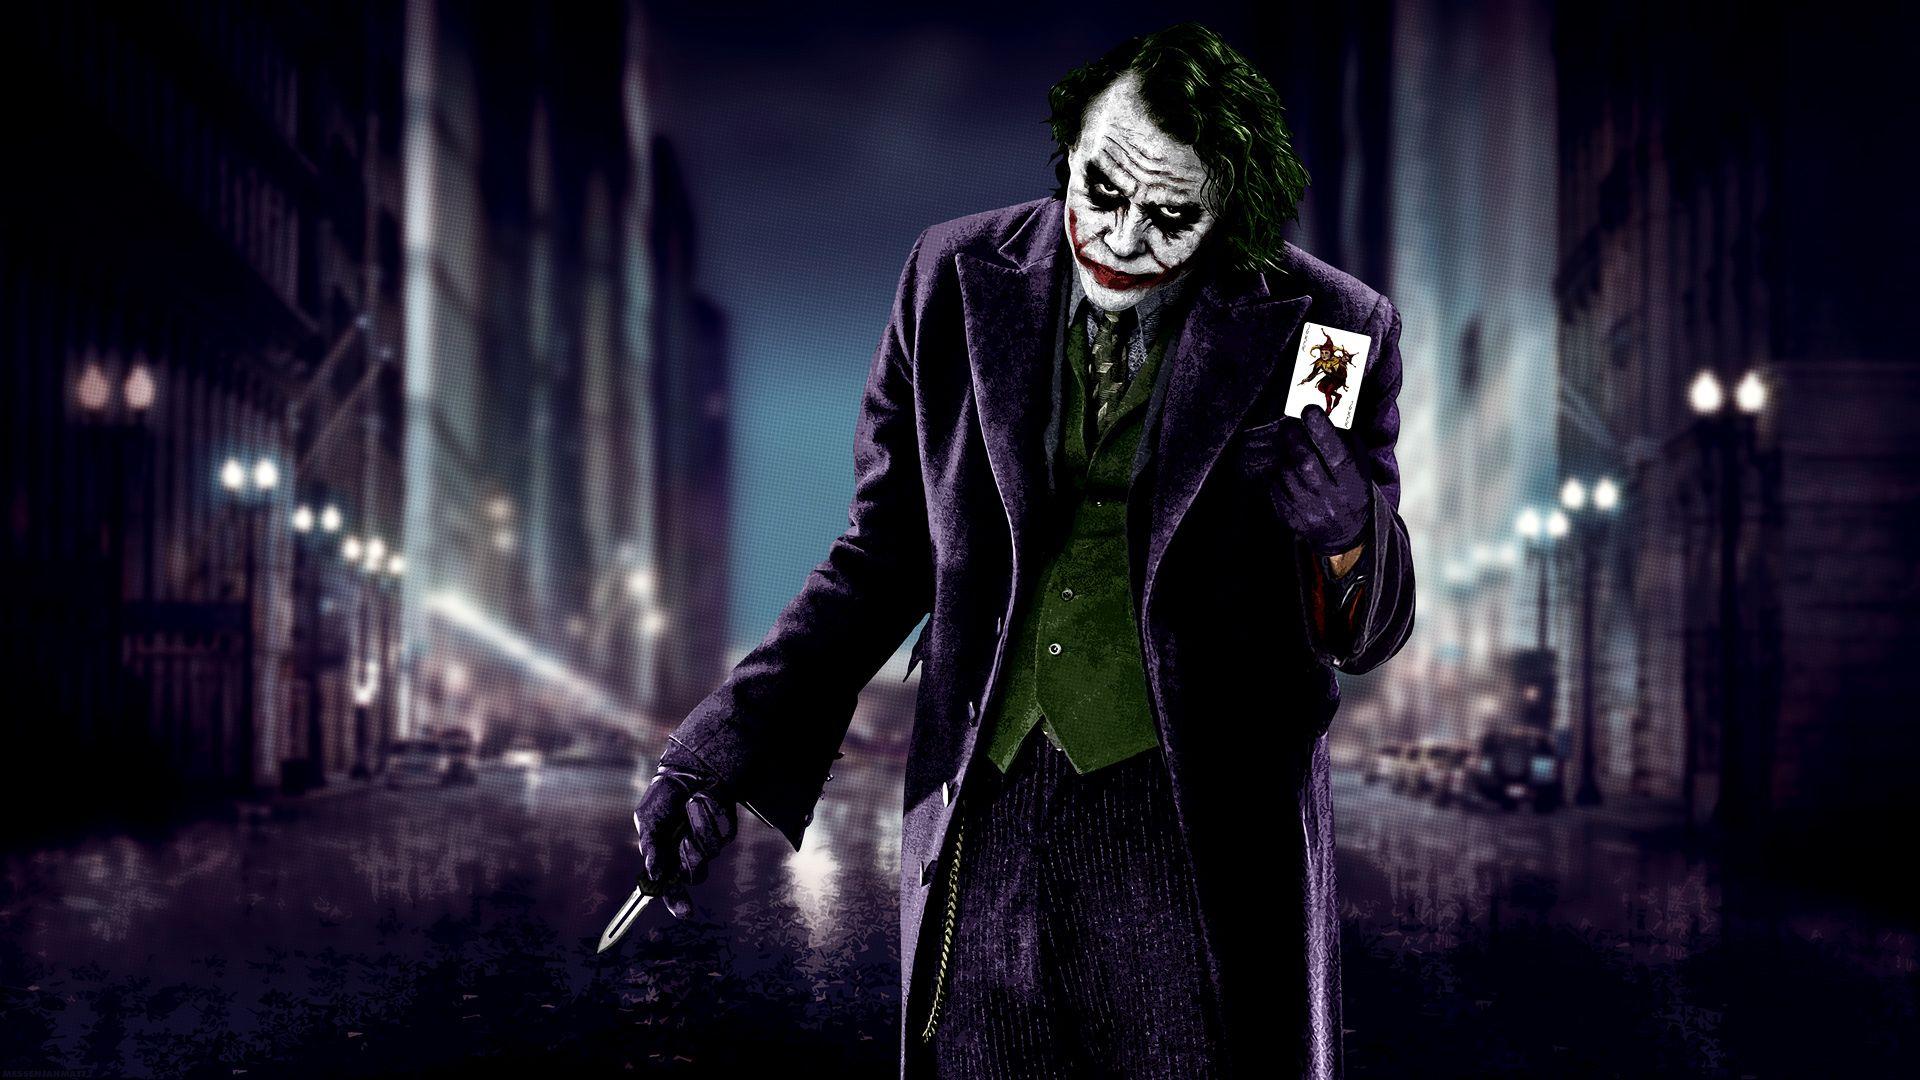 Joker Wallpaper Joker Wallpaper Background